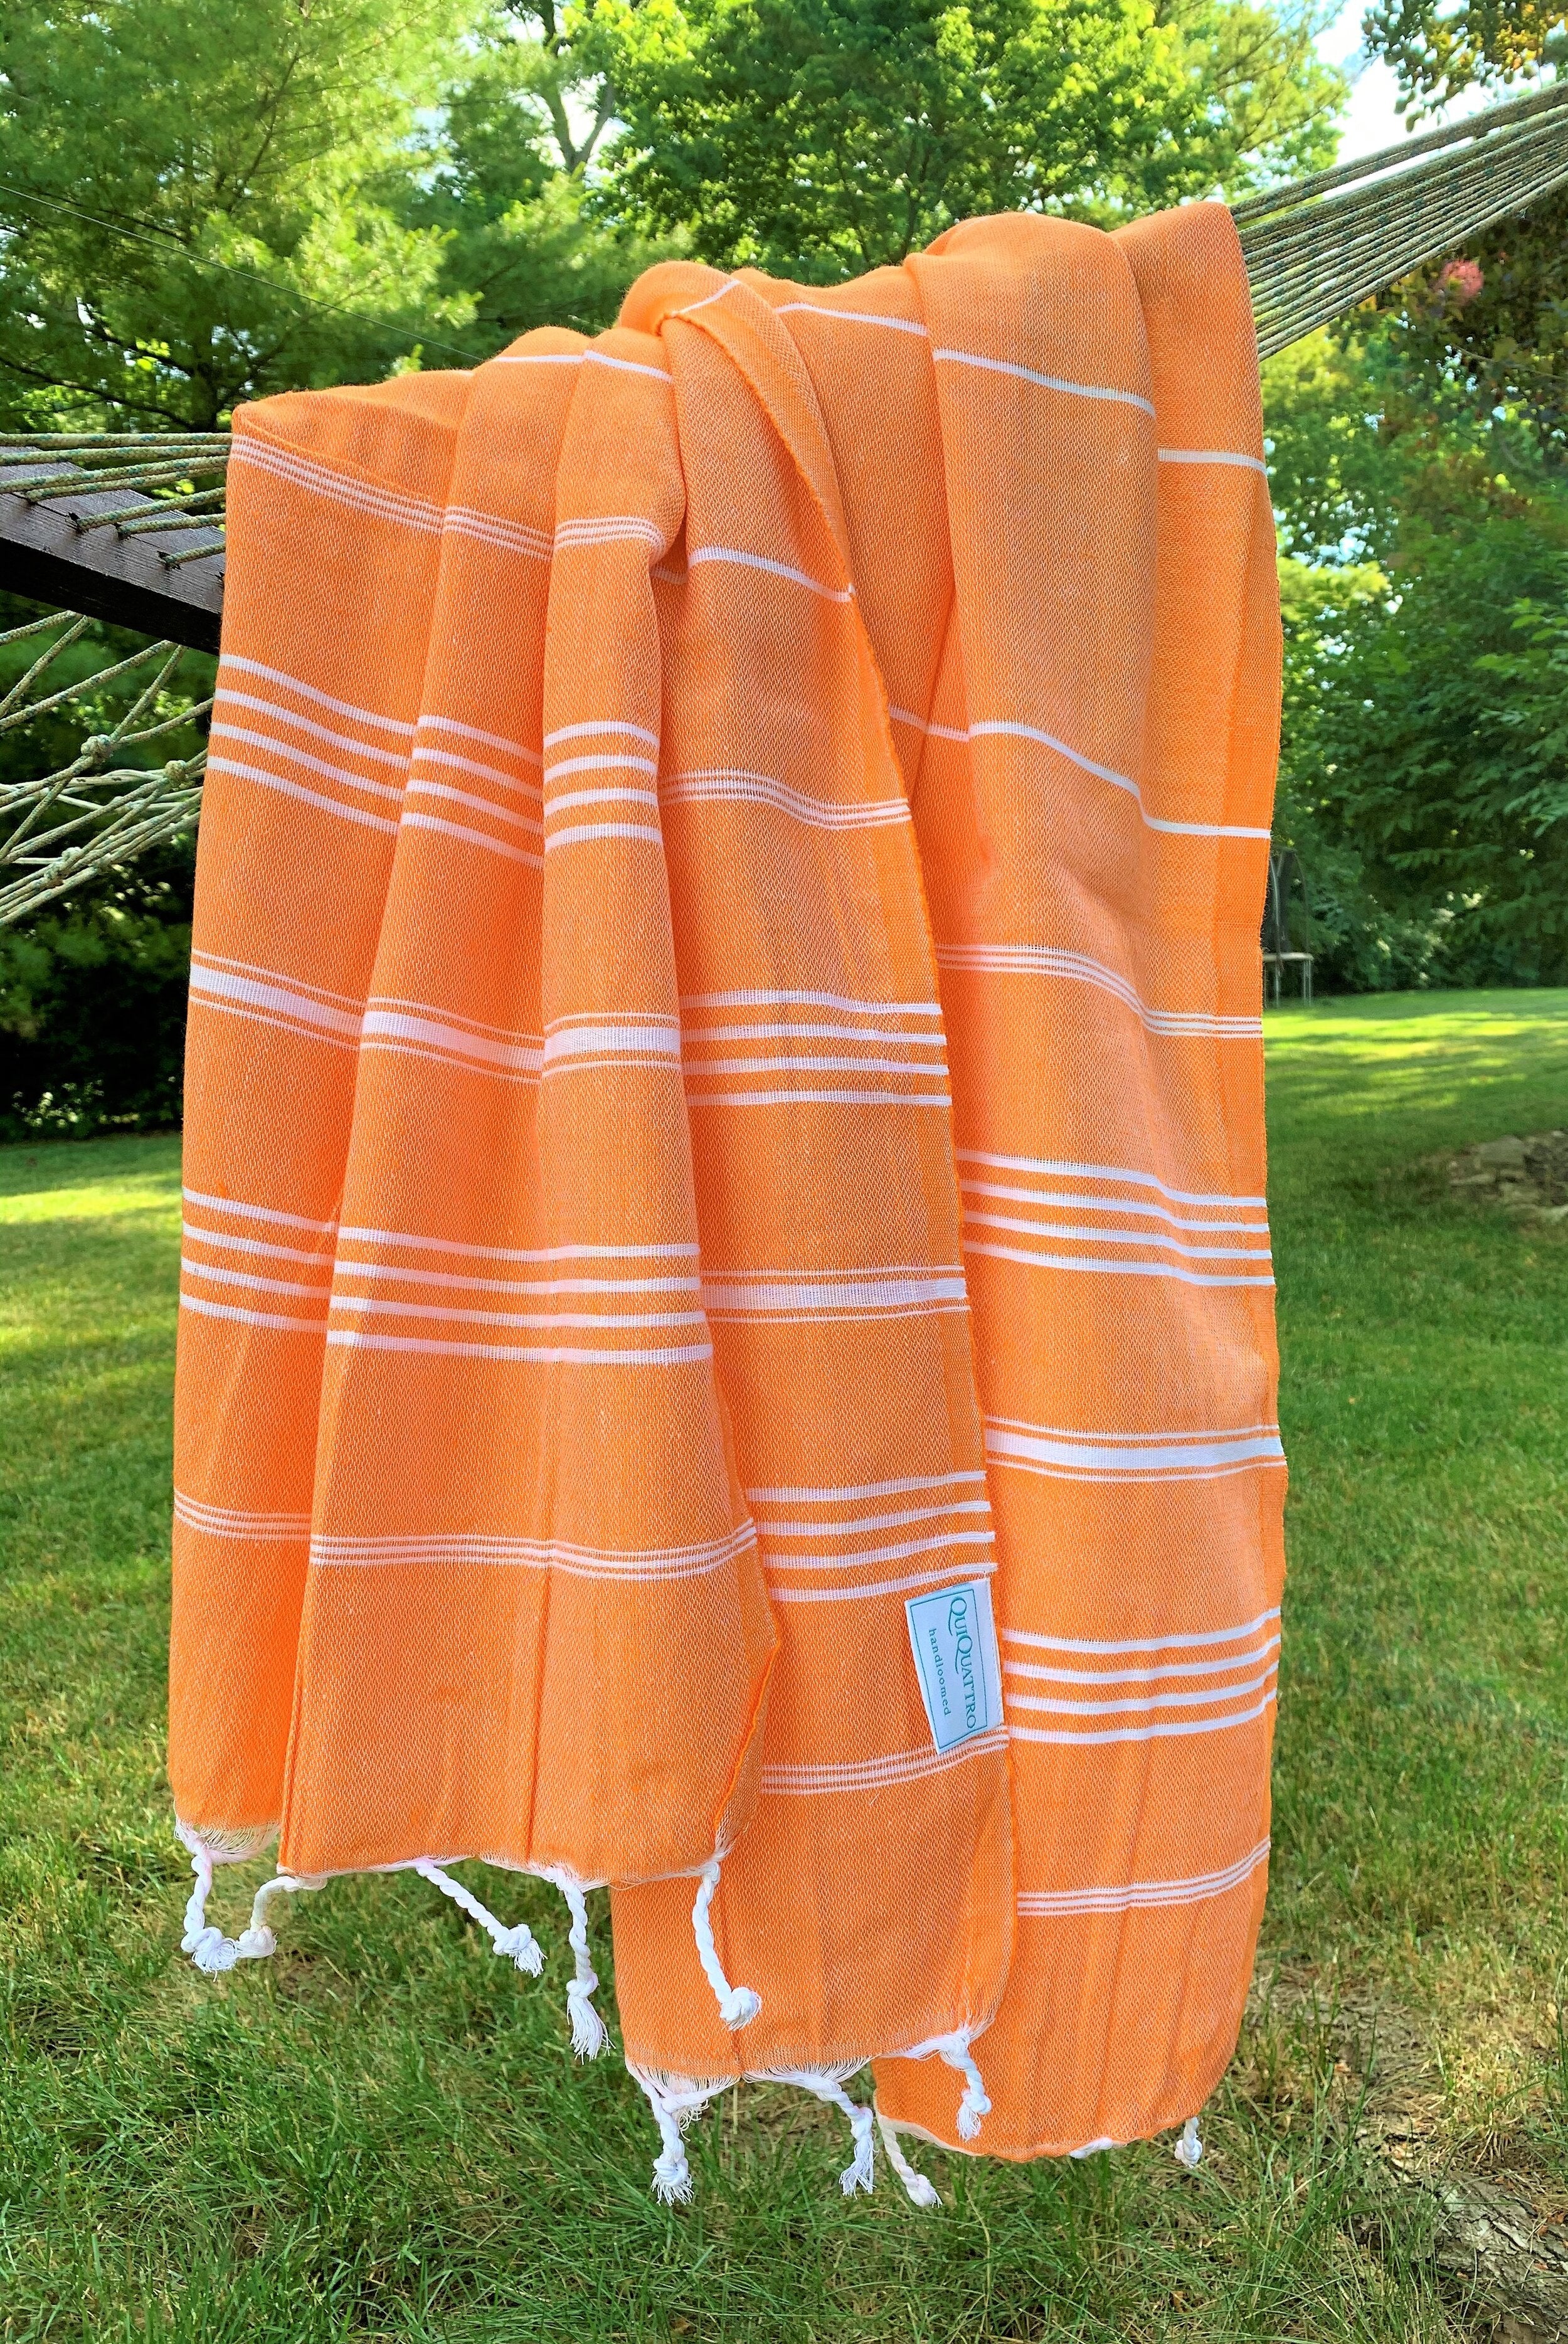 turkish peshtemal towels in orange